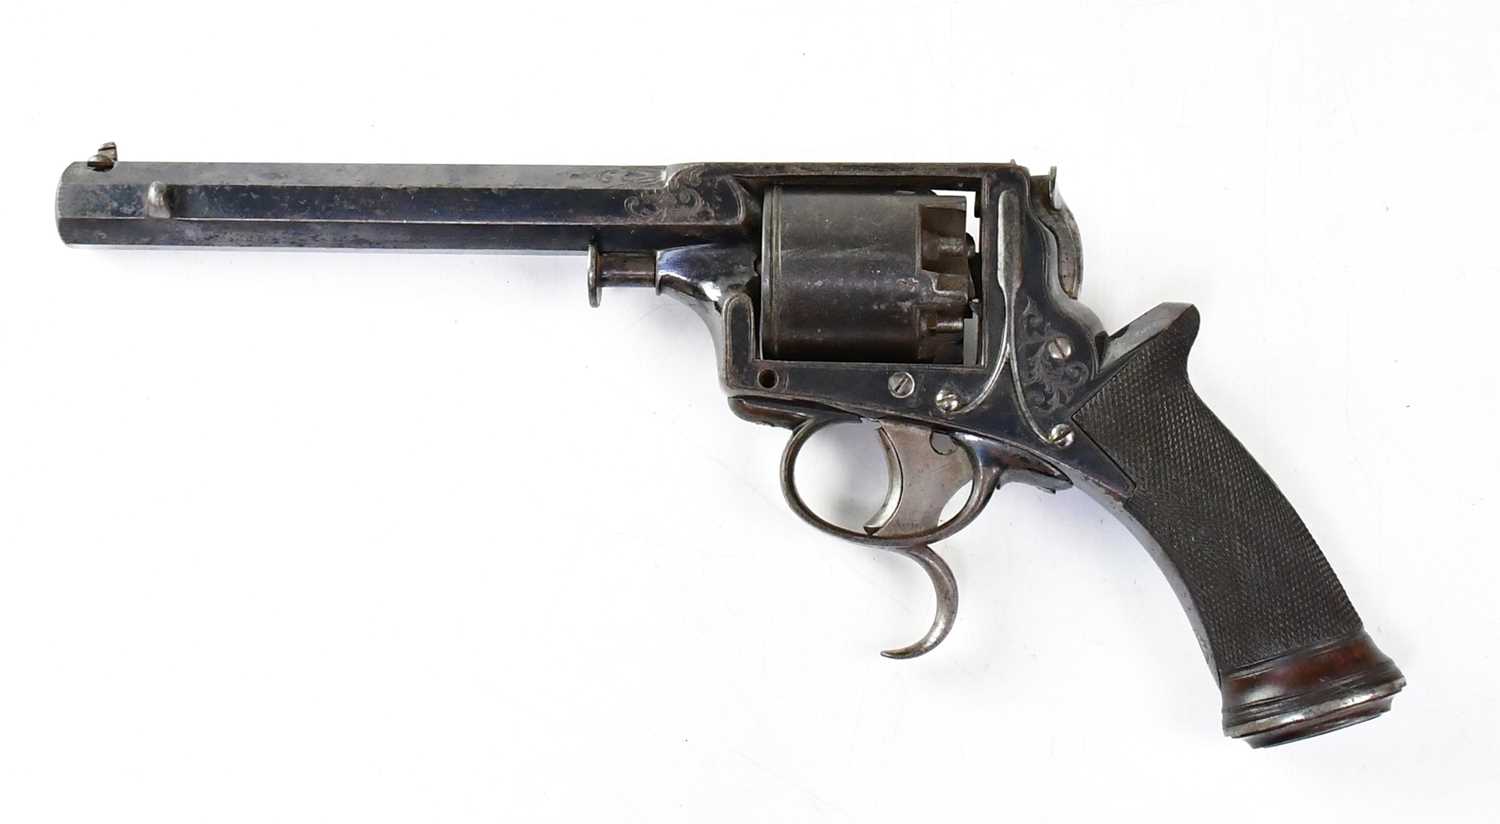 TRANTER; a mid-19th century 54 bore five shot percussion cap revolver, 6" octagonal barrel, - Image 2 of 2